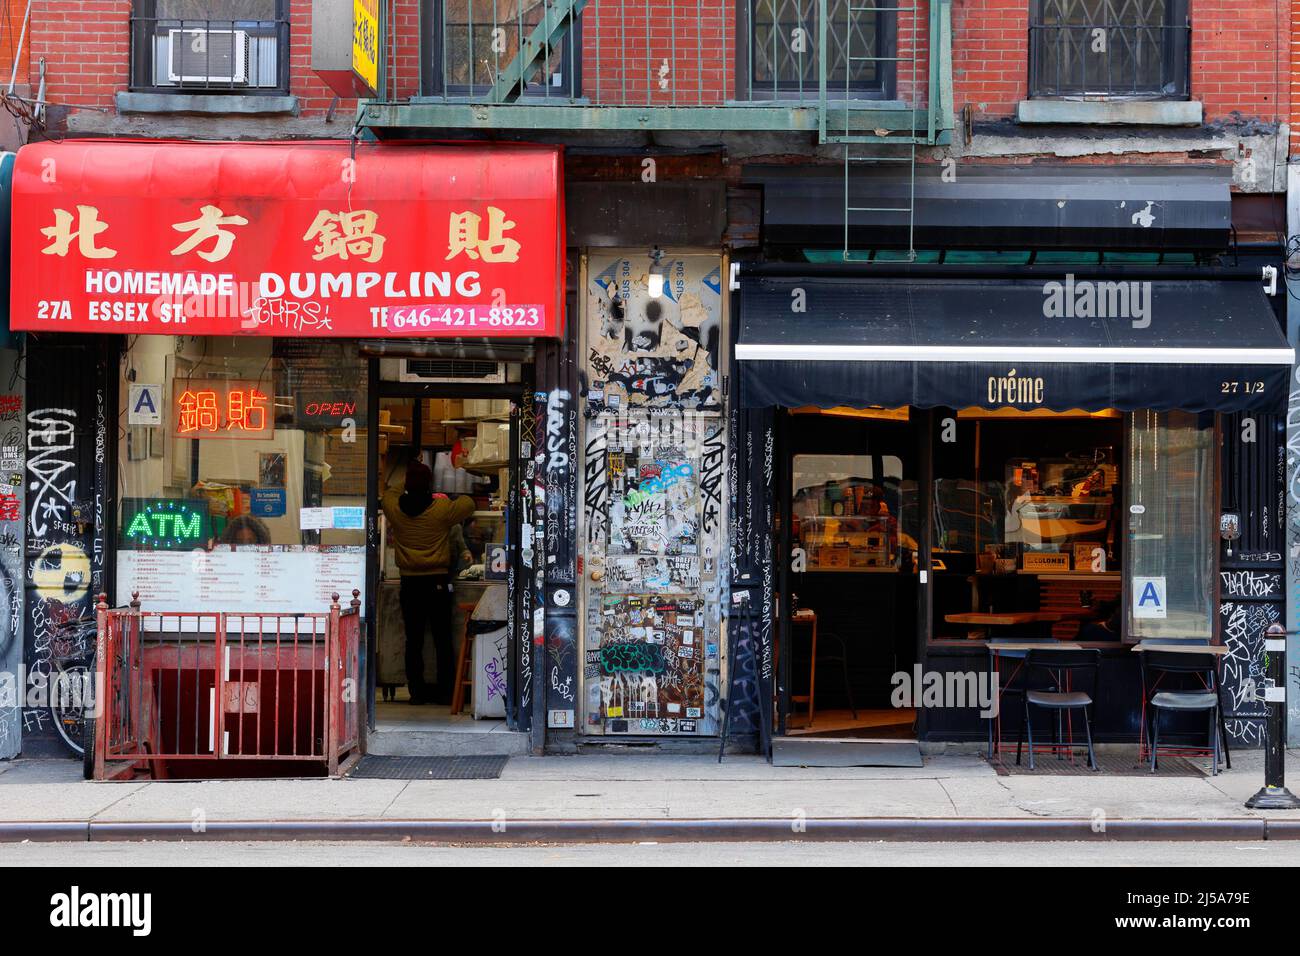 Dumpling casero, Creme, 27 Essex St, Nueva York, NY. Escaparate exterior de un dumpling frito, y un café matcha café en el Lower East Side Foto de stock